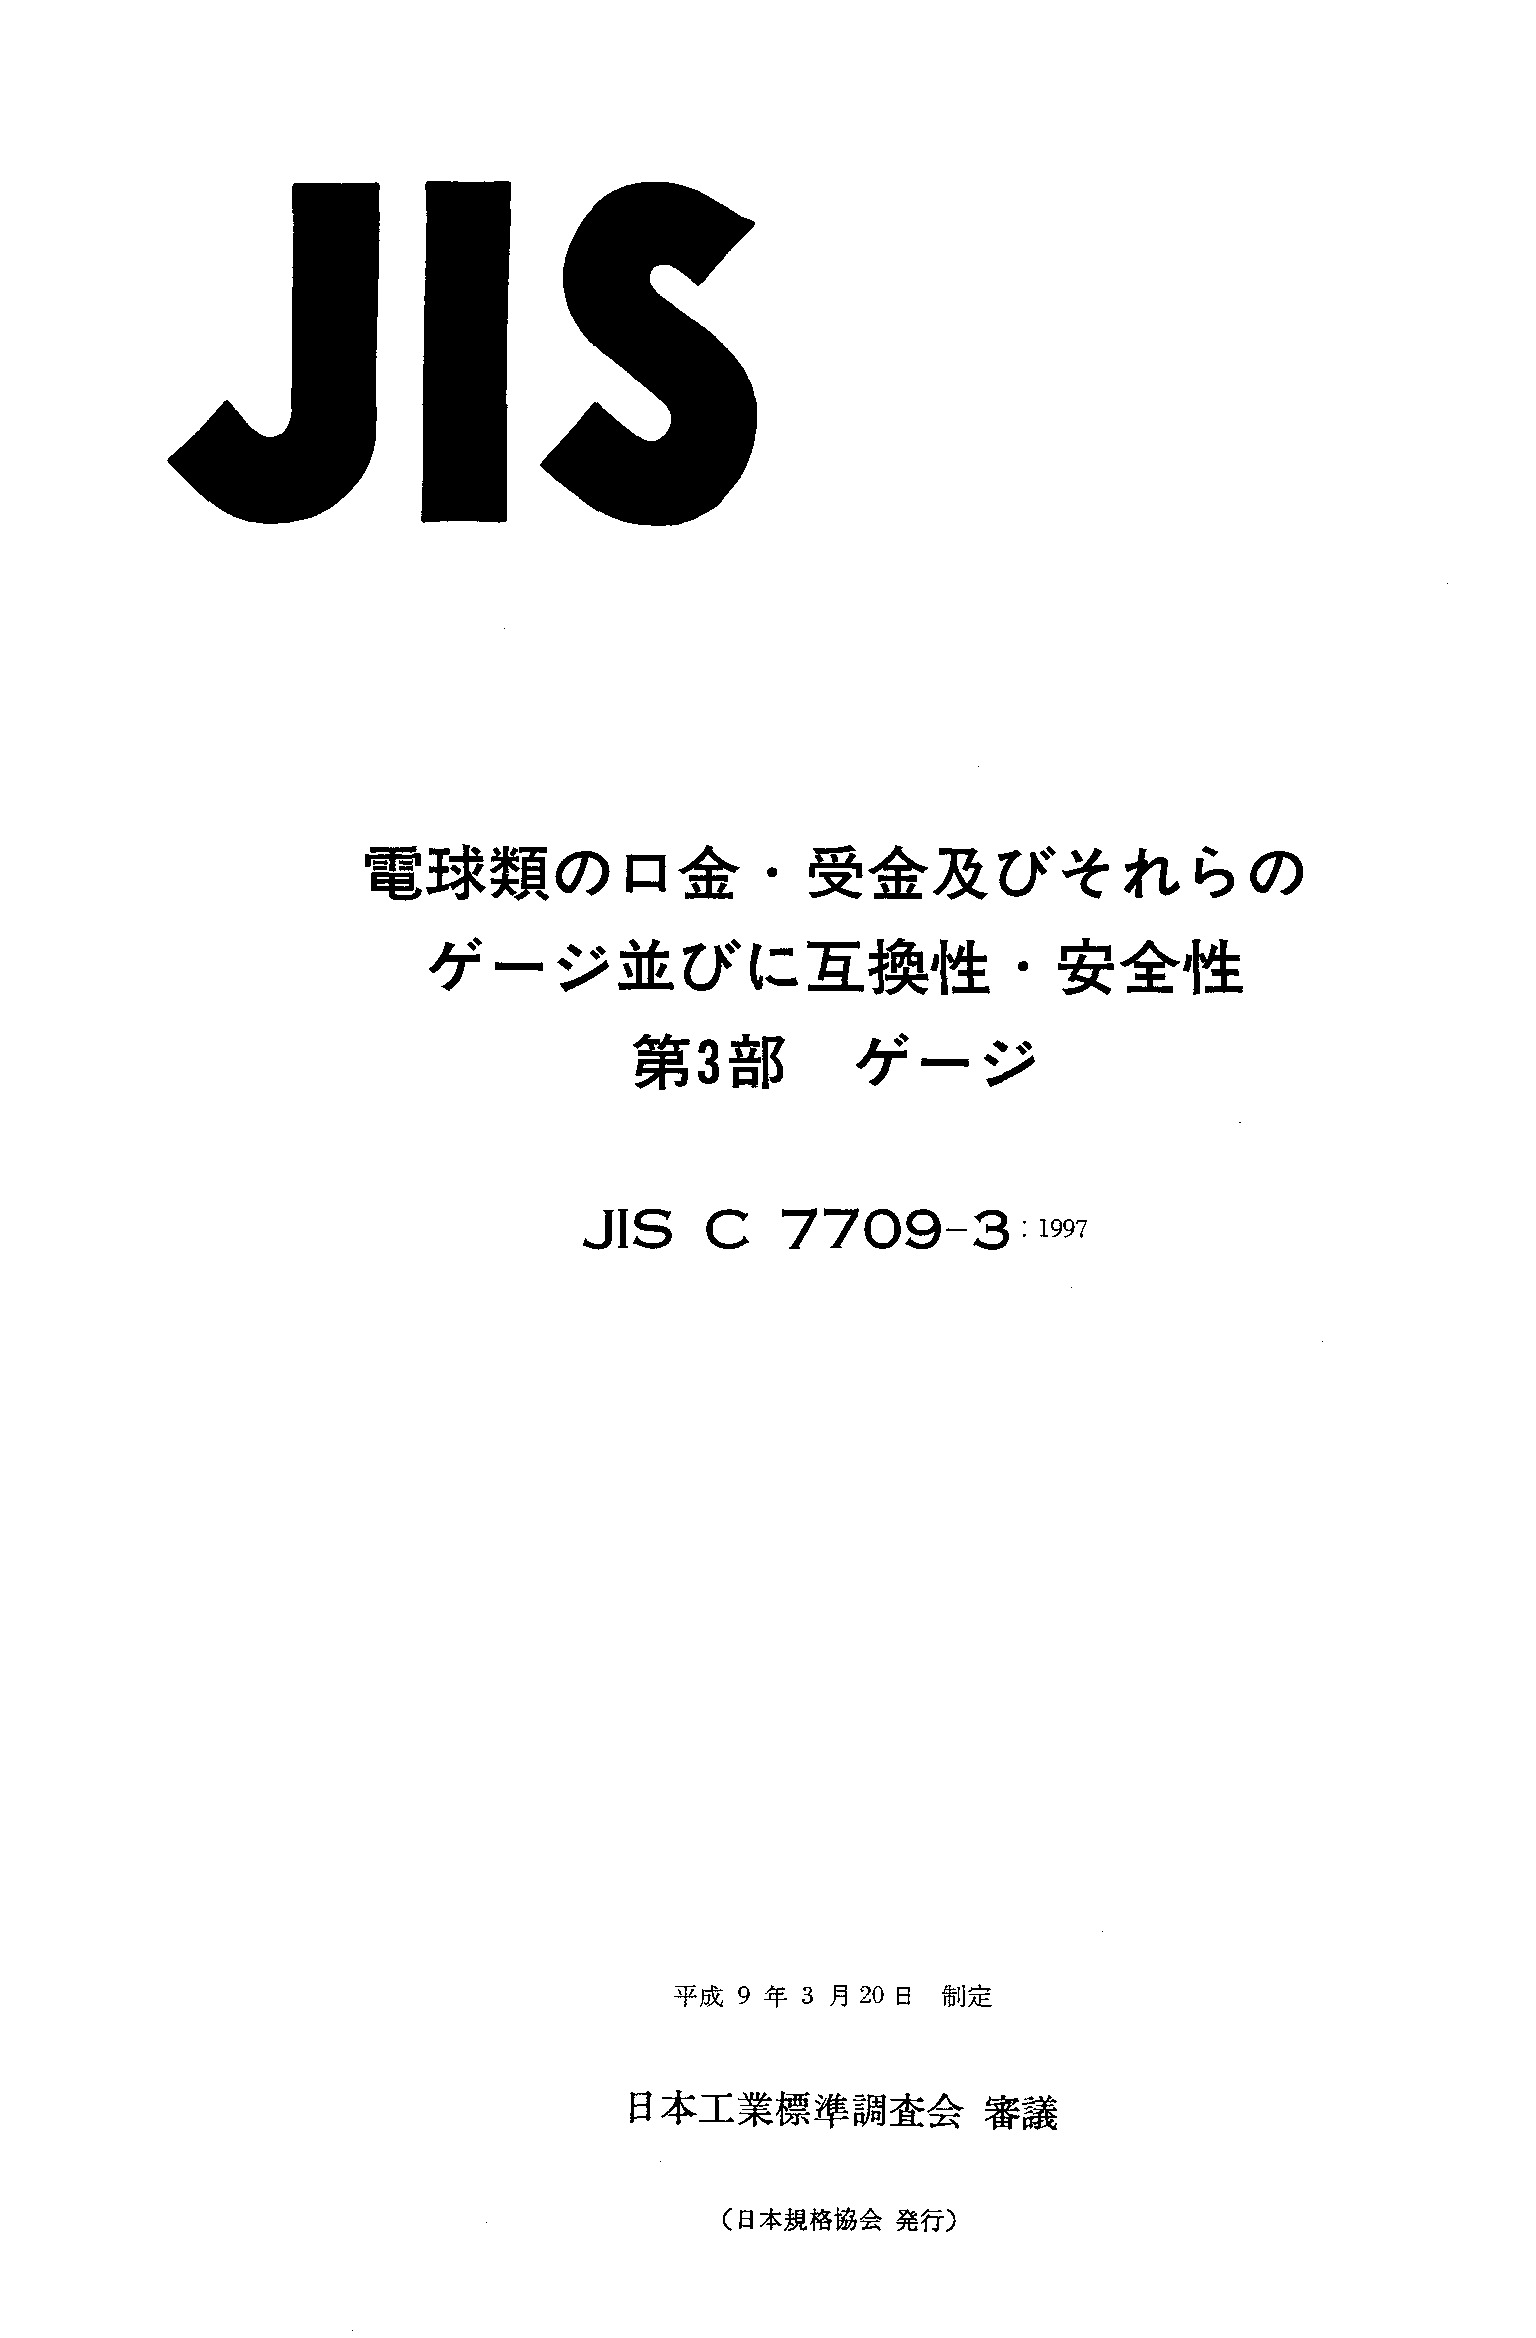 JIS C 7709-3:1997